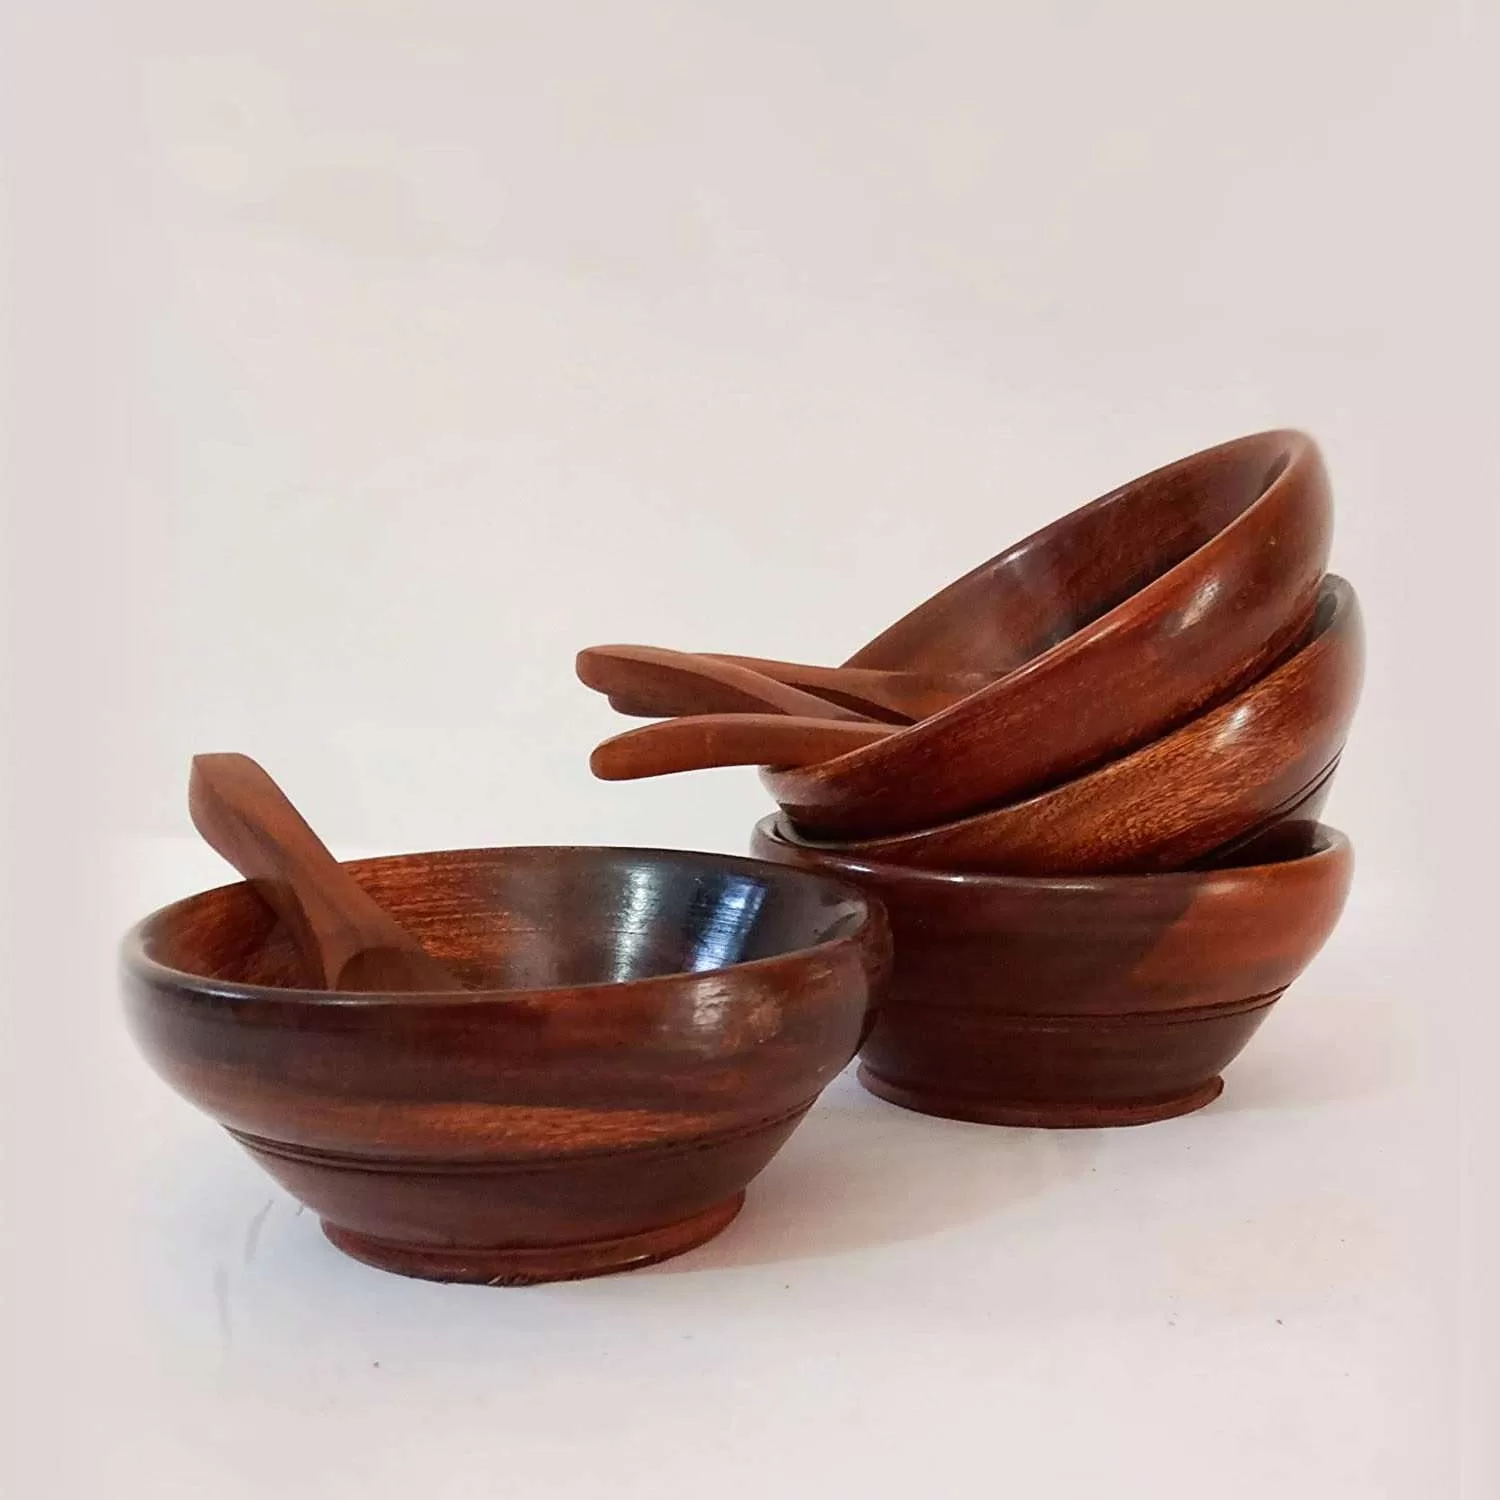 bulk wooden bowls